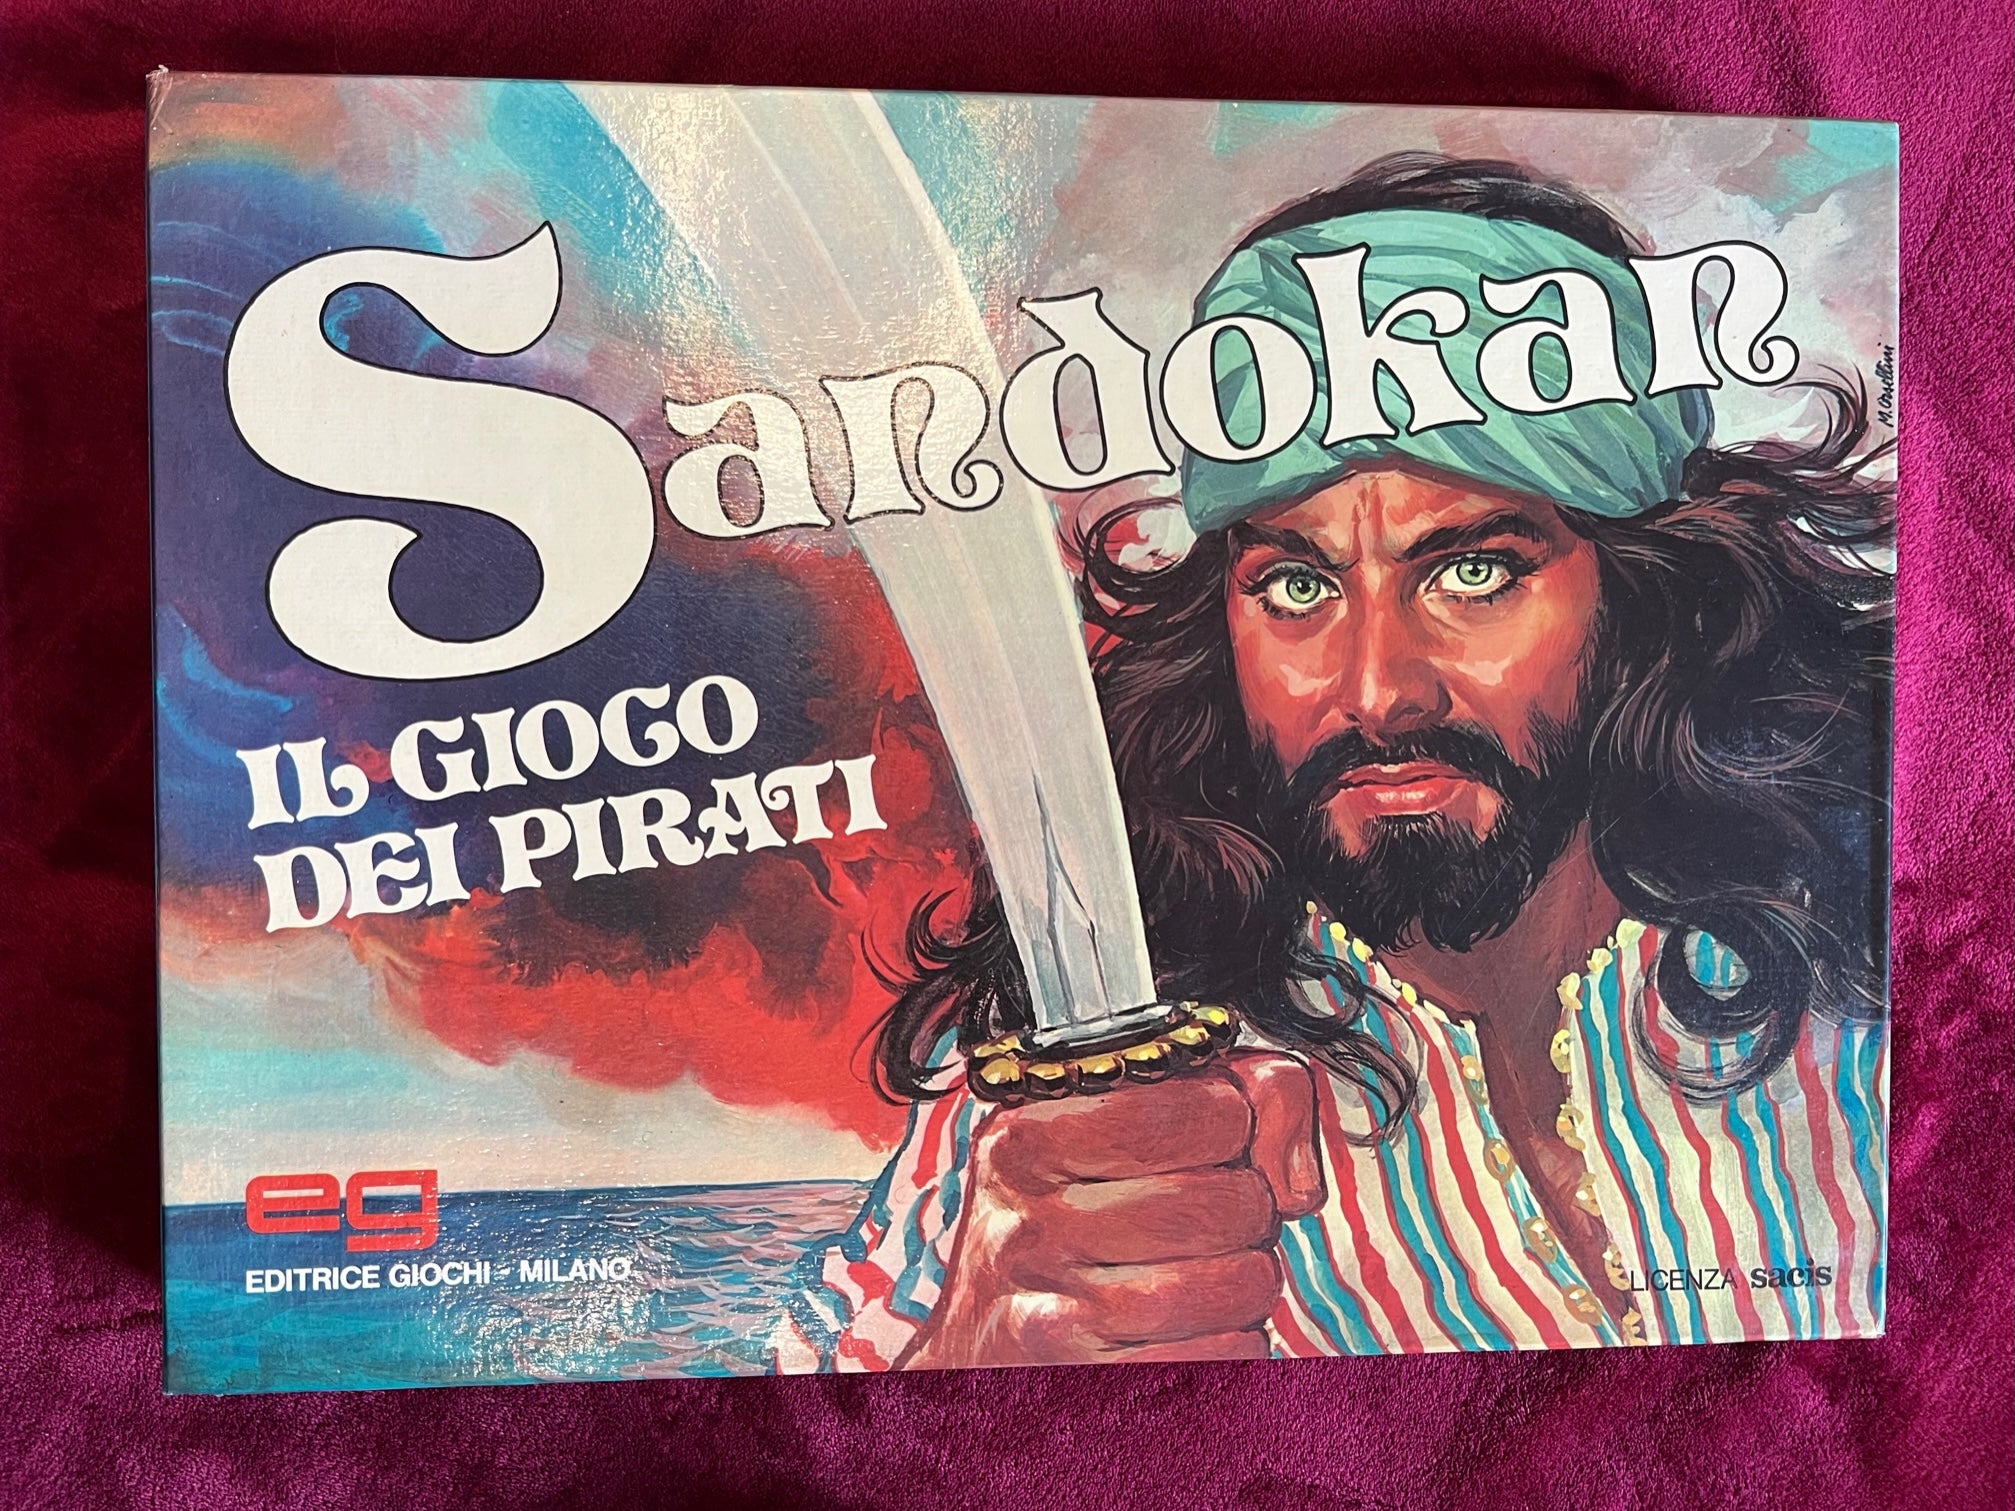 Sandokan il gioco dei pirati 1976 Editrice Giochi